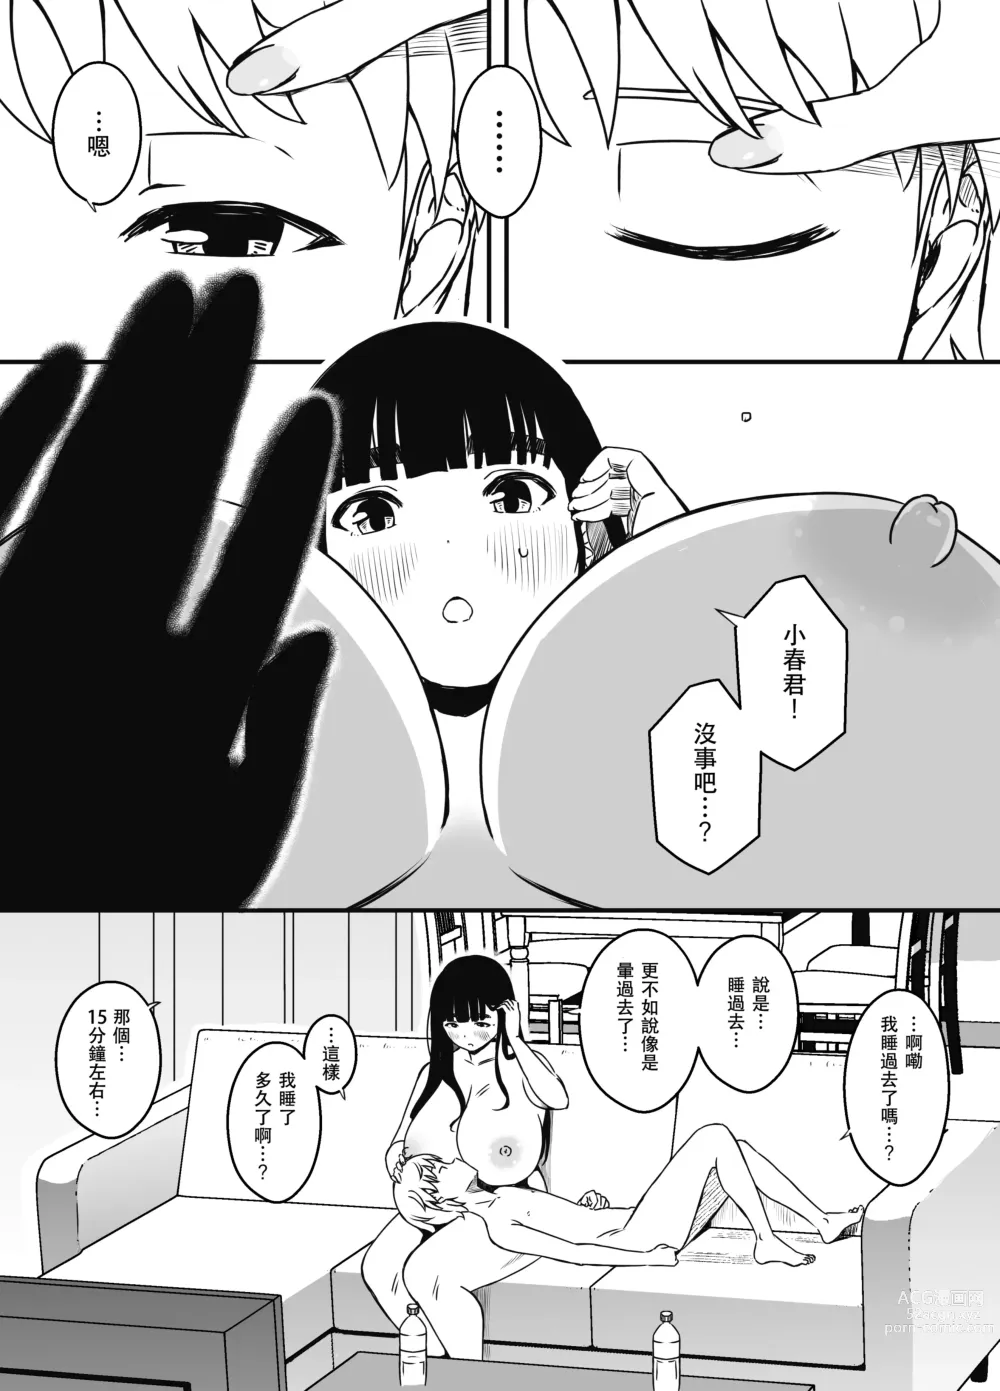 Page 65 of doujinshi Giri no Ane to no 7-kakan Seikatsu - 6